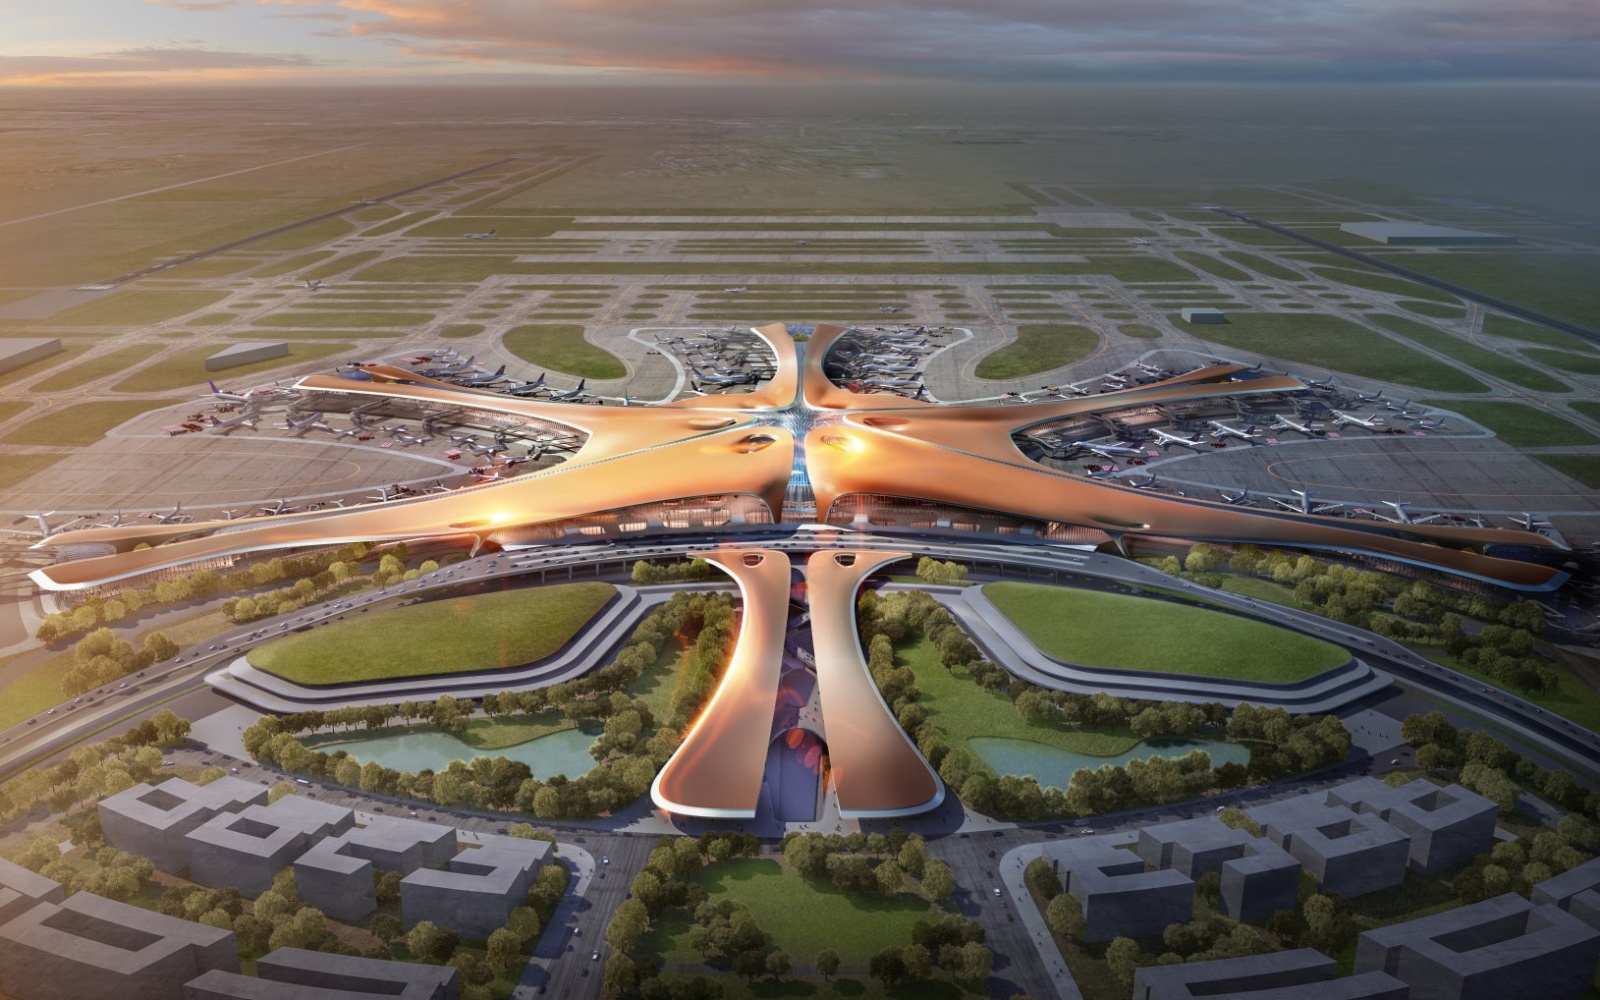 Rendering of the Zaha Hadid designed airport in Beijing